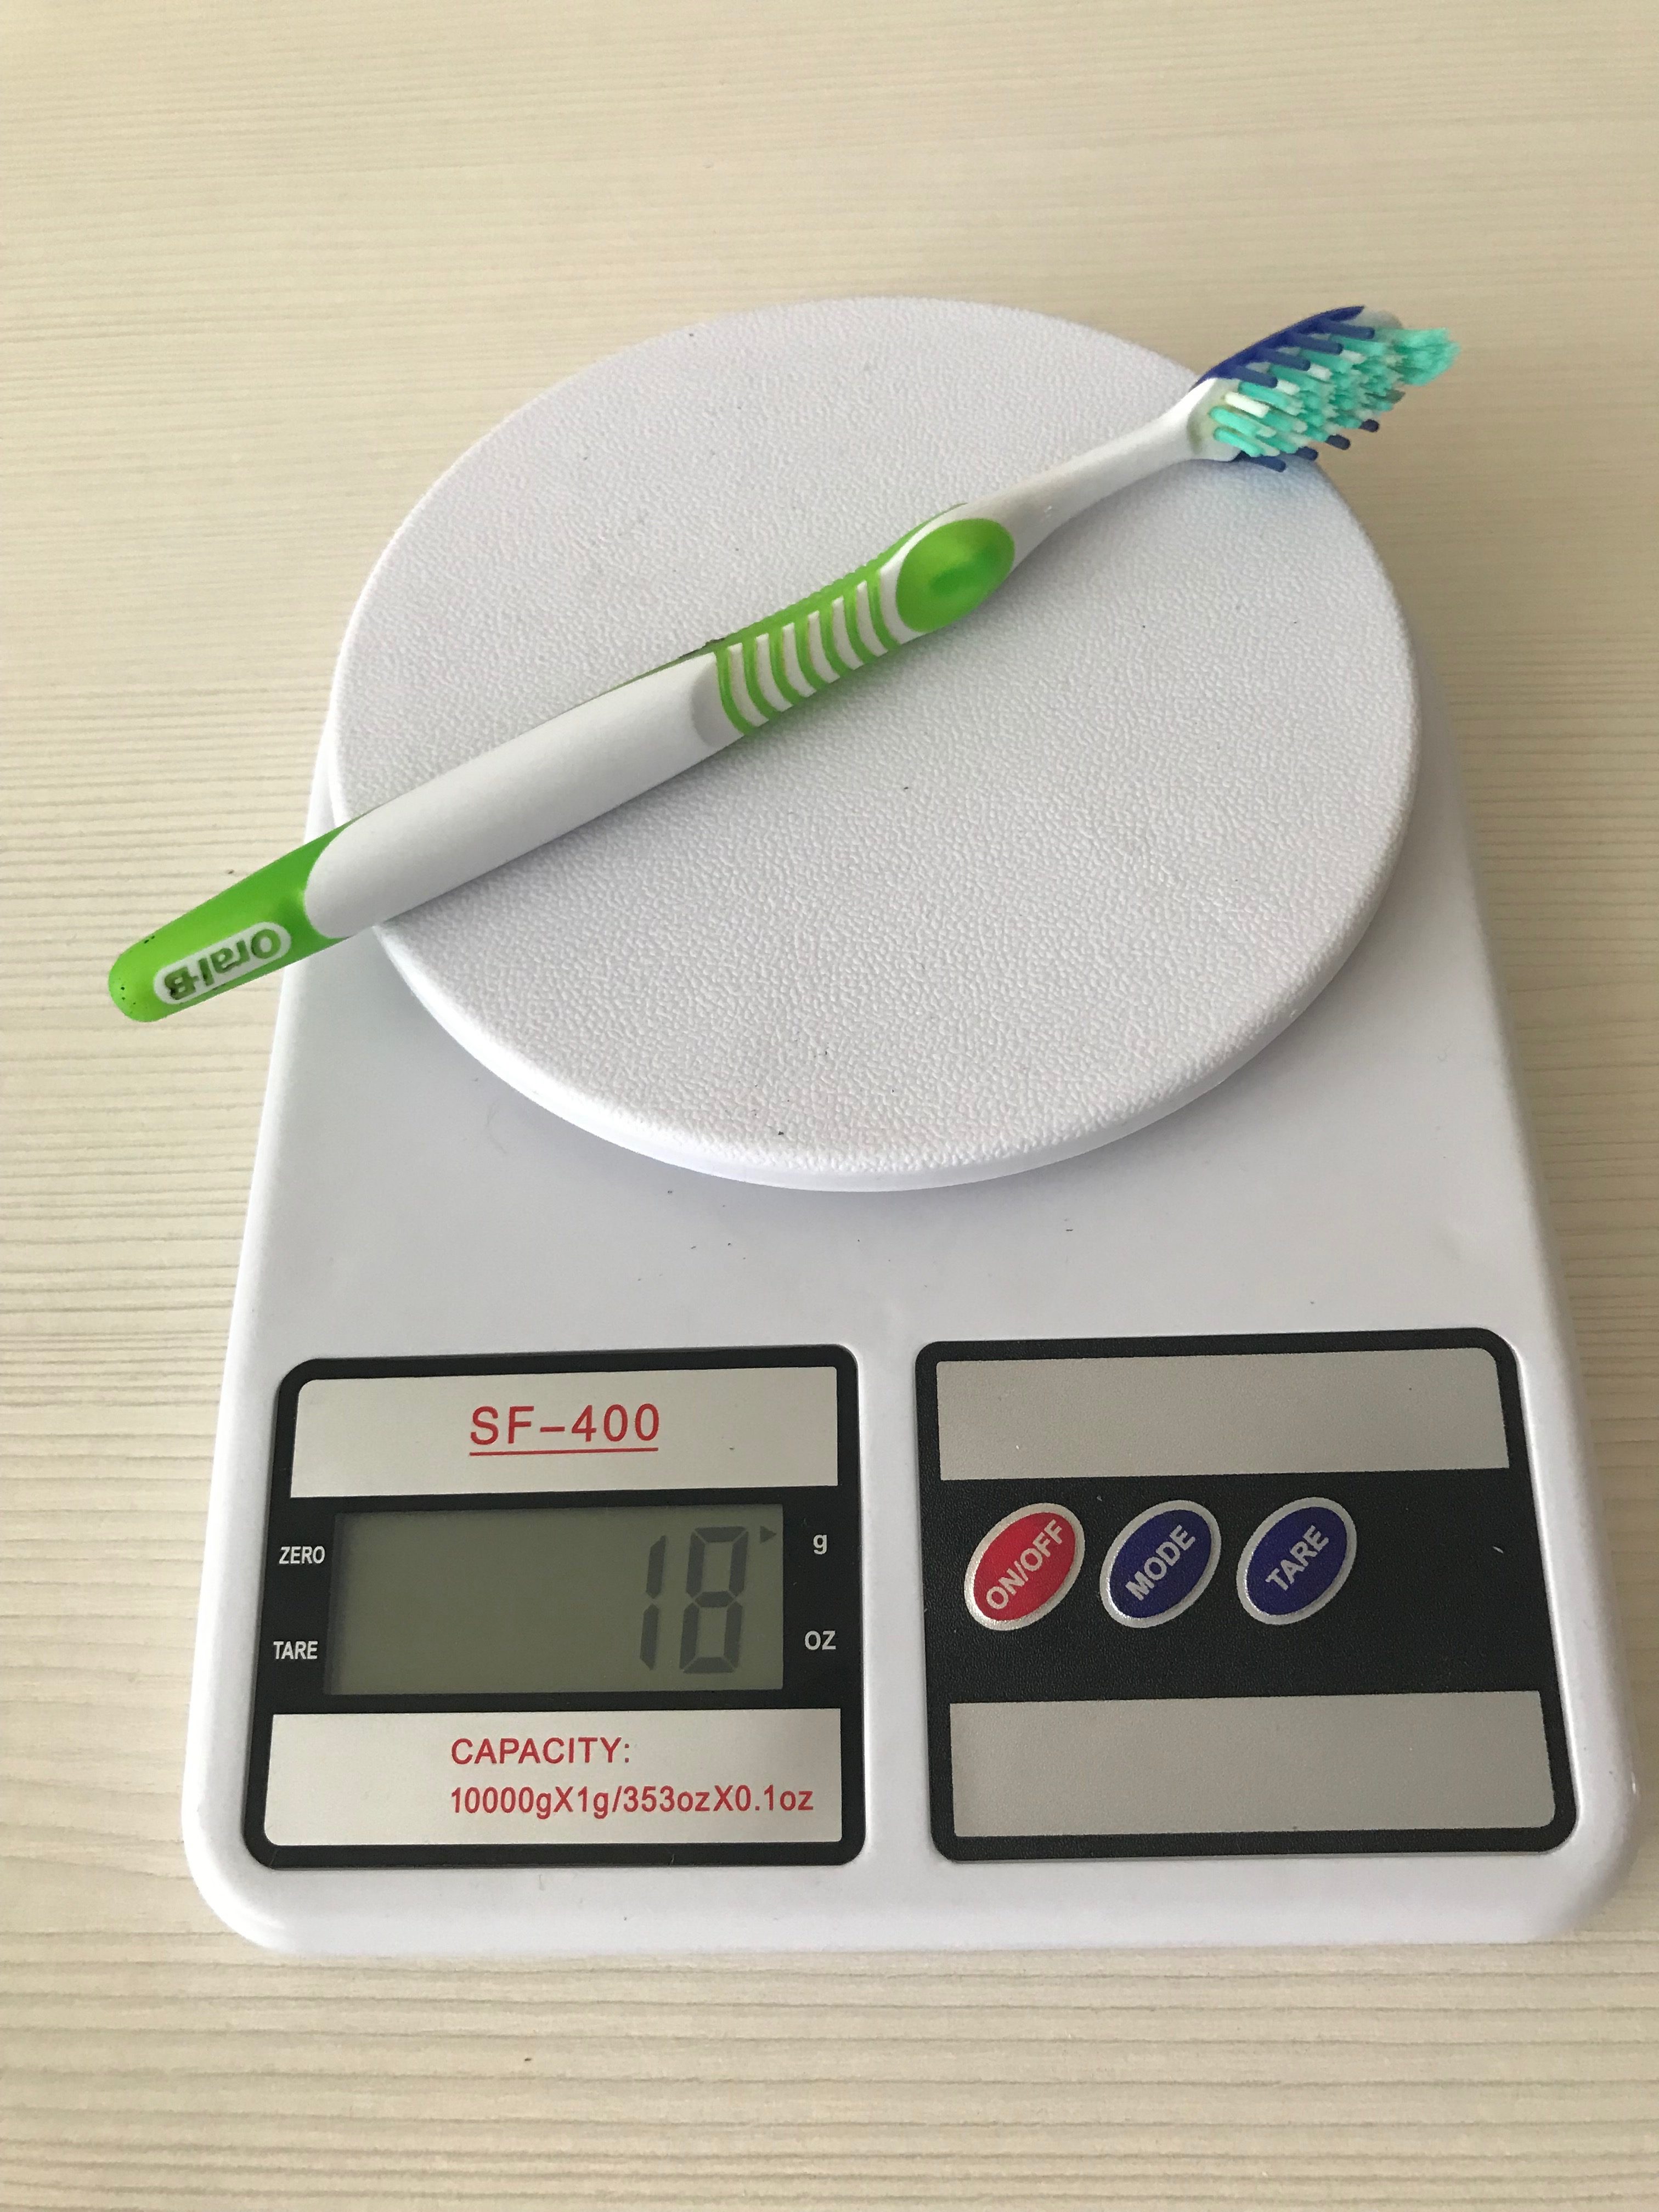 Berapa berat sikat gigi?